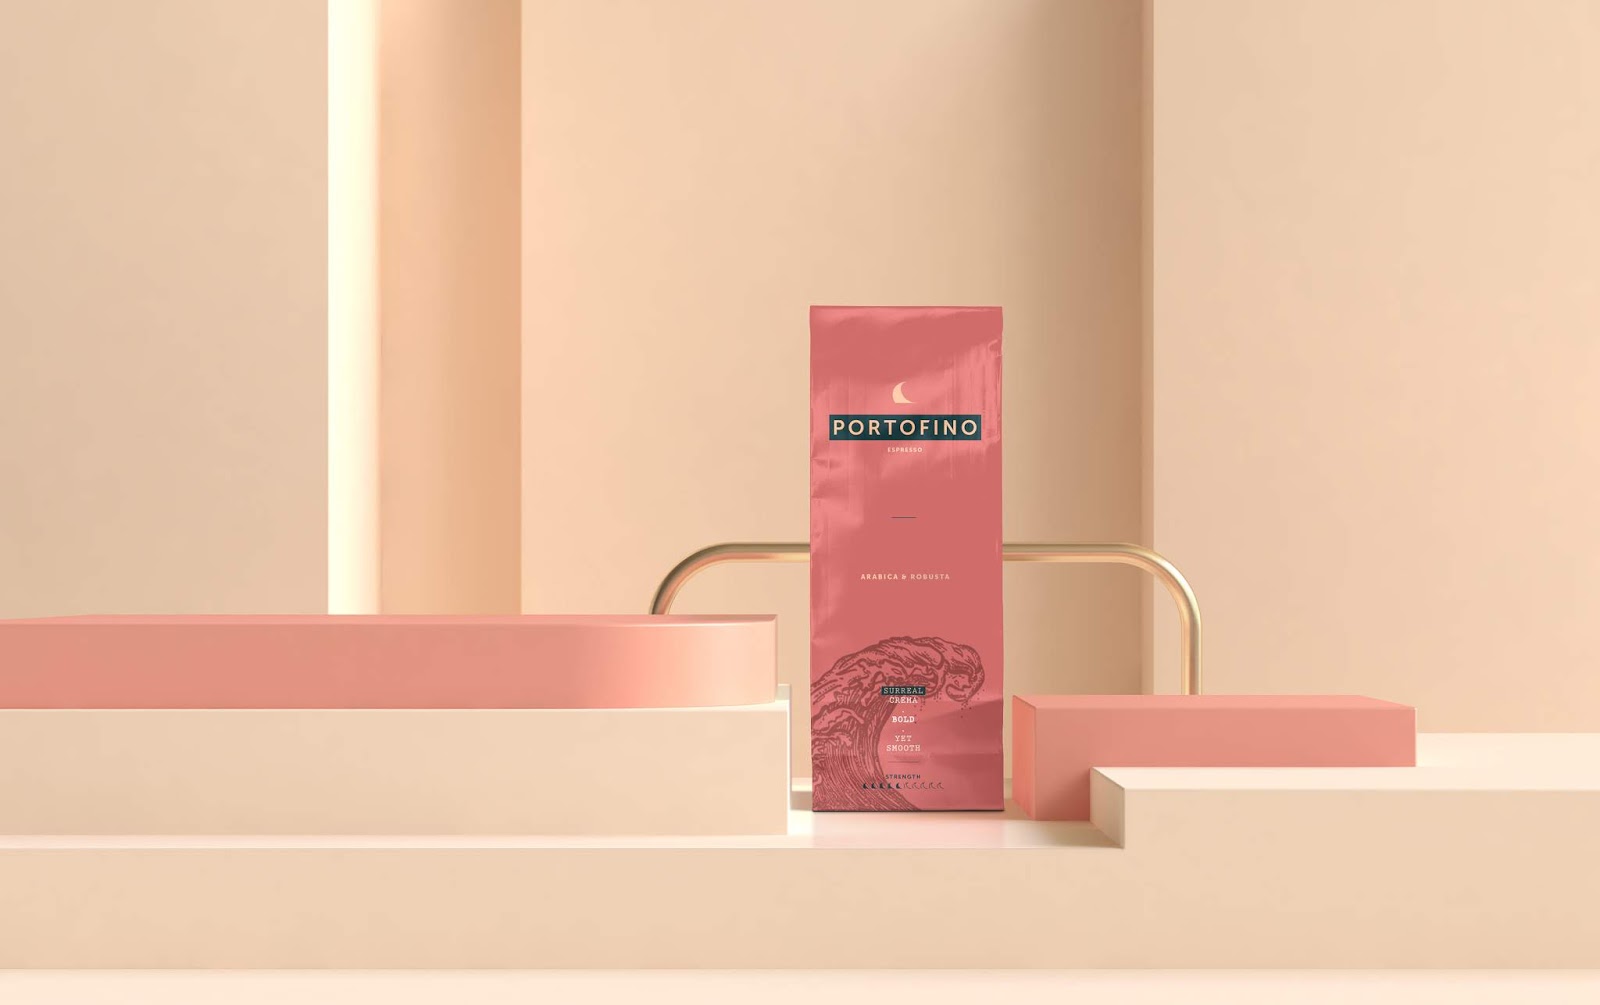 咖啡快消品茶叶西安oe欧亿体育app官方下载
品牌策划包装设计VI设计logo设计